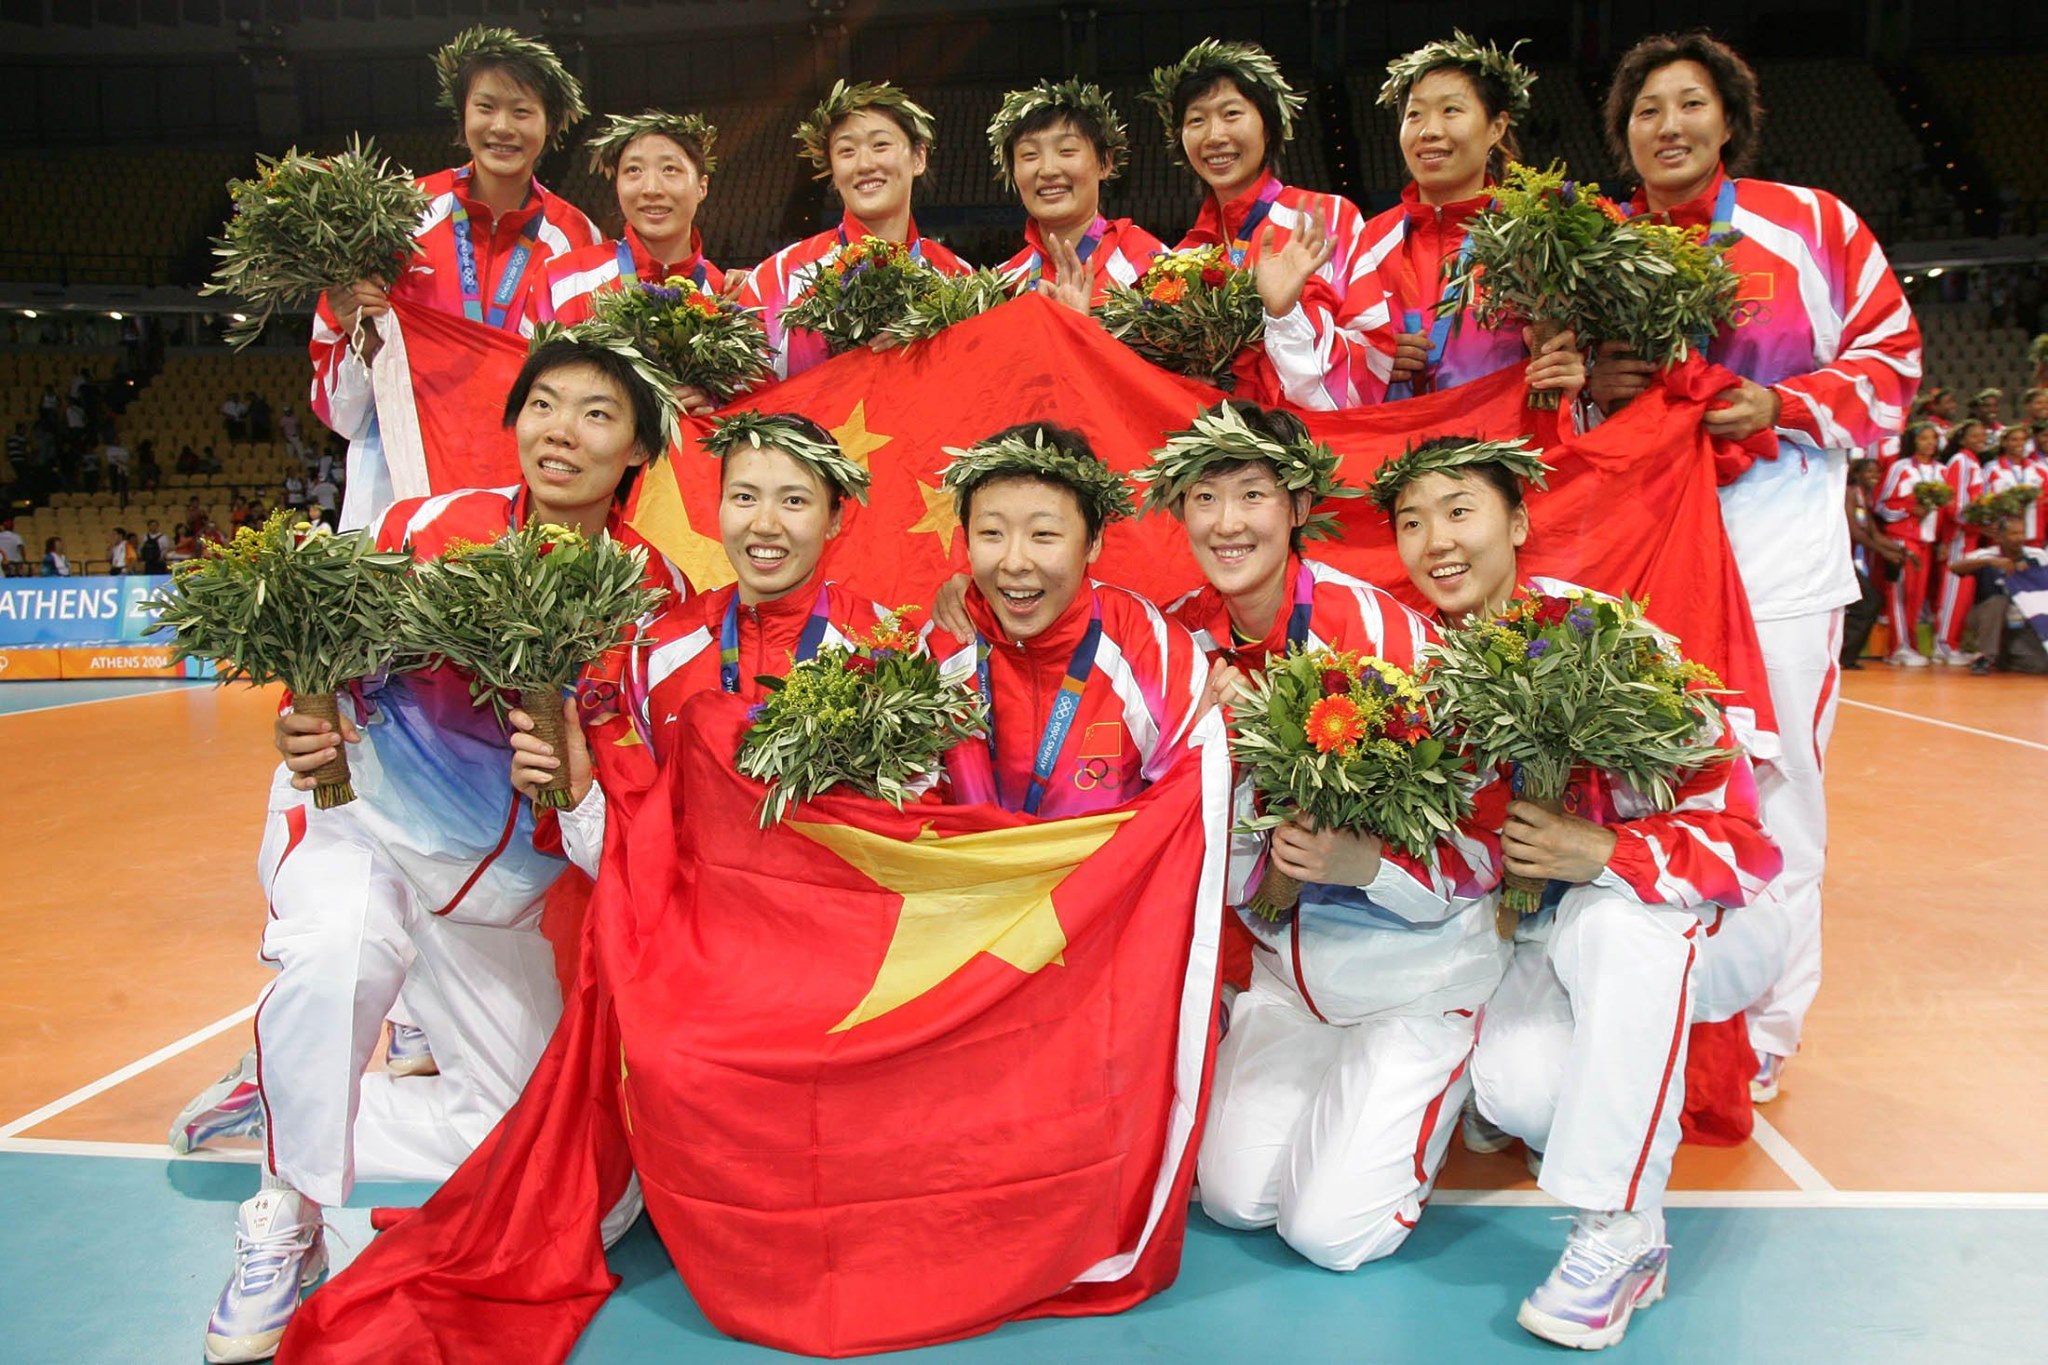 国际排联奥运回顾系列之中国女排雅典夺冠!